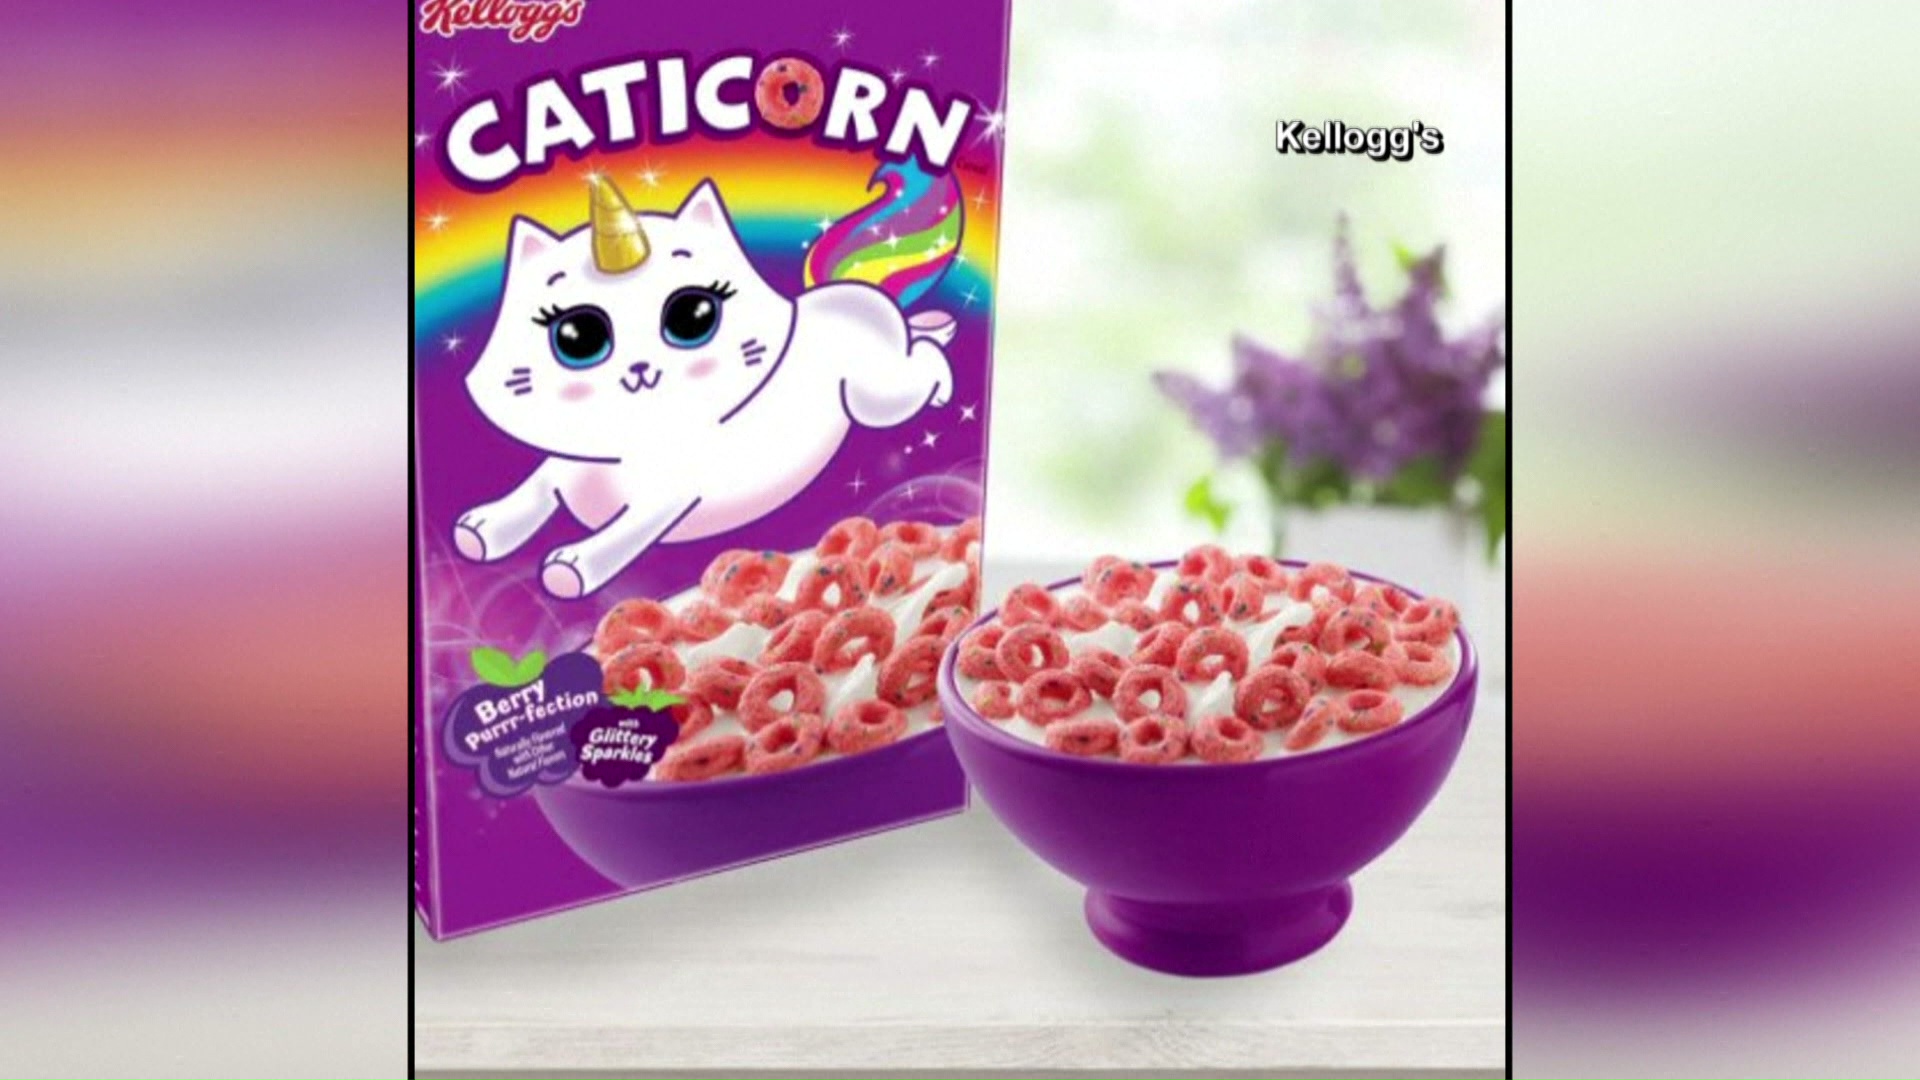 New unicorn-inspired cereal hitting Sam's Club shelves